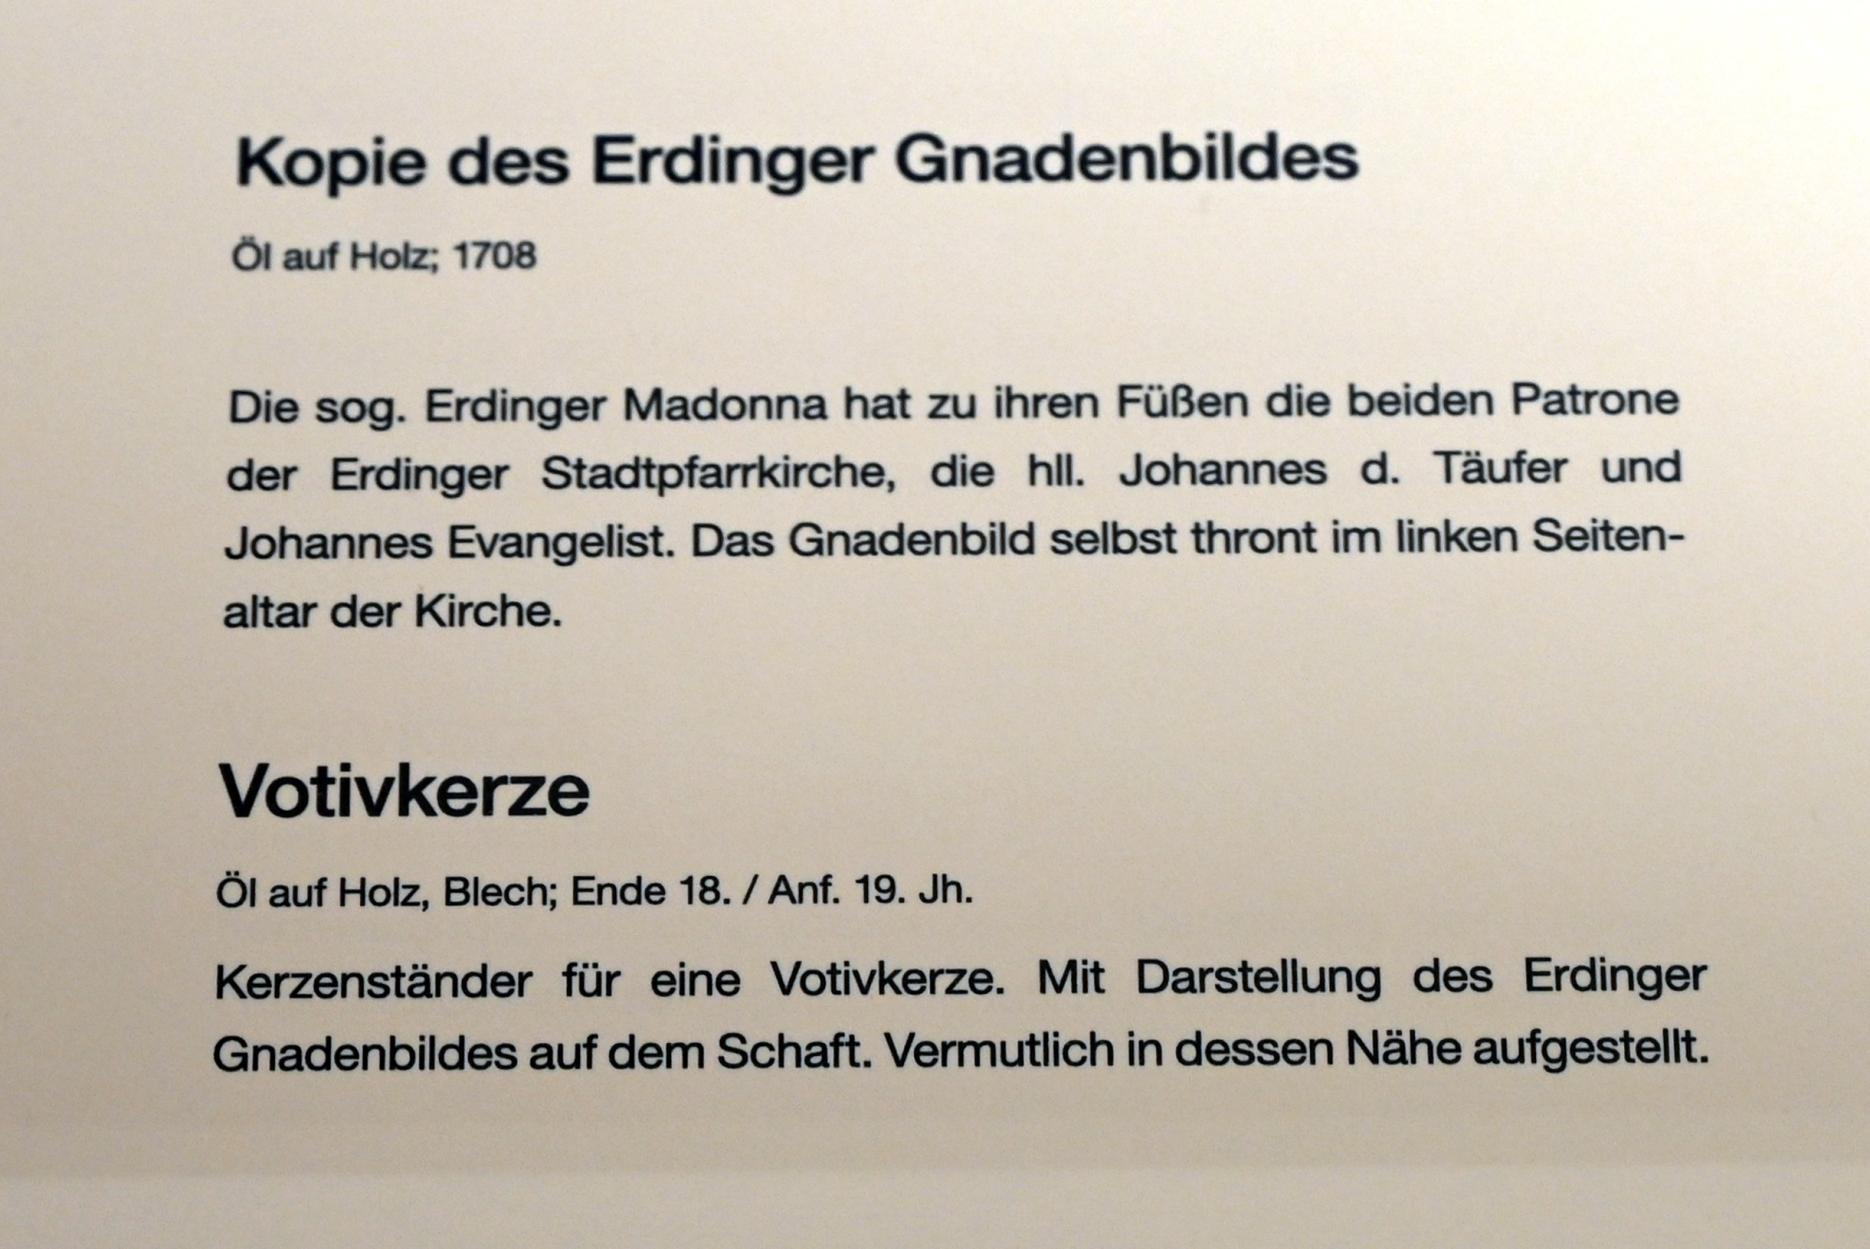 Kopie des Erdinger Gnadenbildes, Erding, Museum Erding, Volkskunst, 1708, Bild 2/2